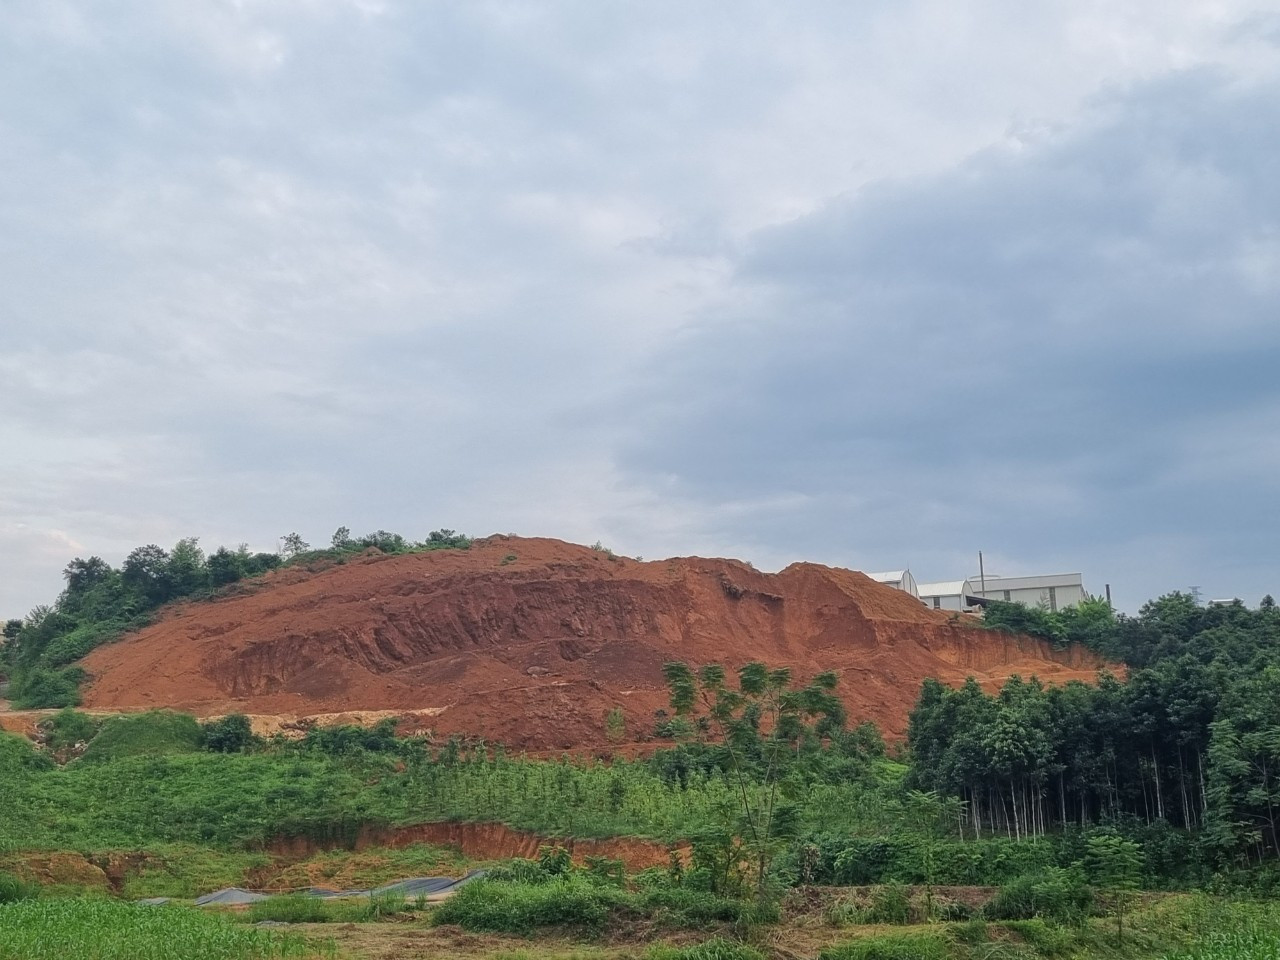 Đất hiếm ở Yên Bái được đánh giá là khoáng sản quý có chứa nhiều nguyên tố có hàm lượng rất nhỏ trong vỏ trái đất như Yttrium và Lanthanum… Ảnh: Ngô Hùng